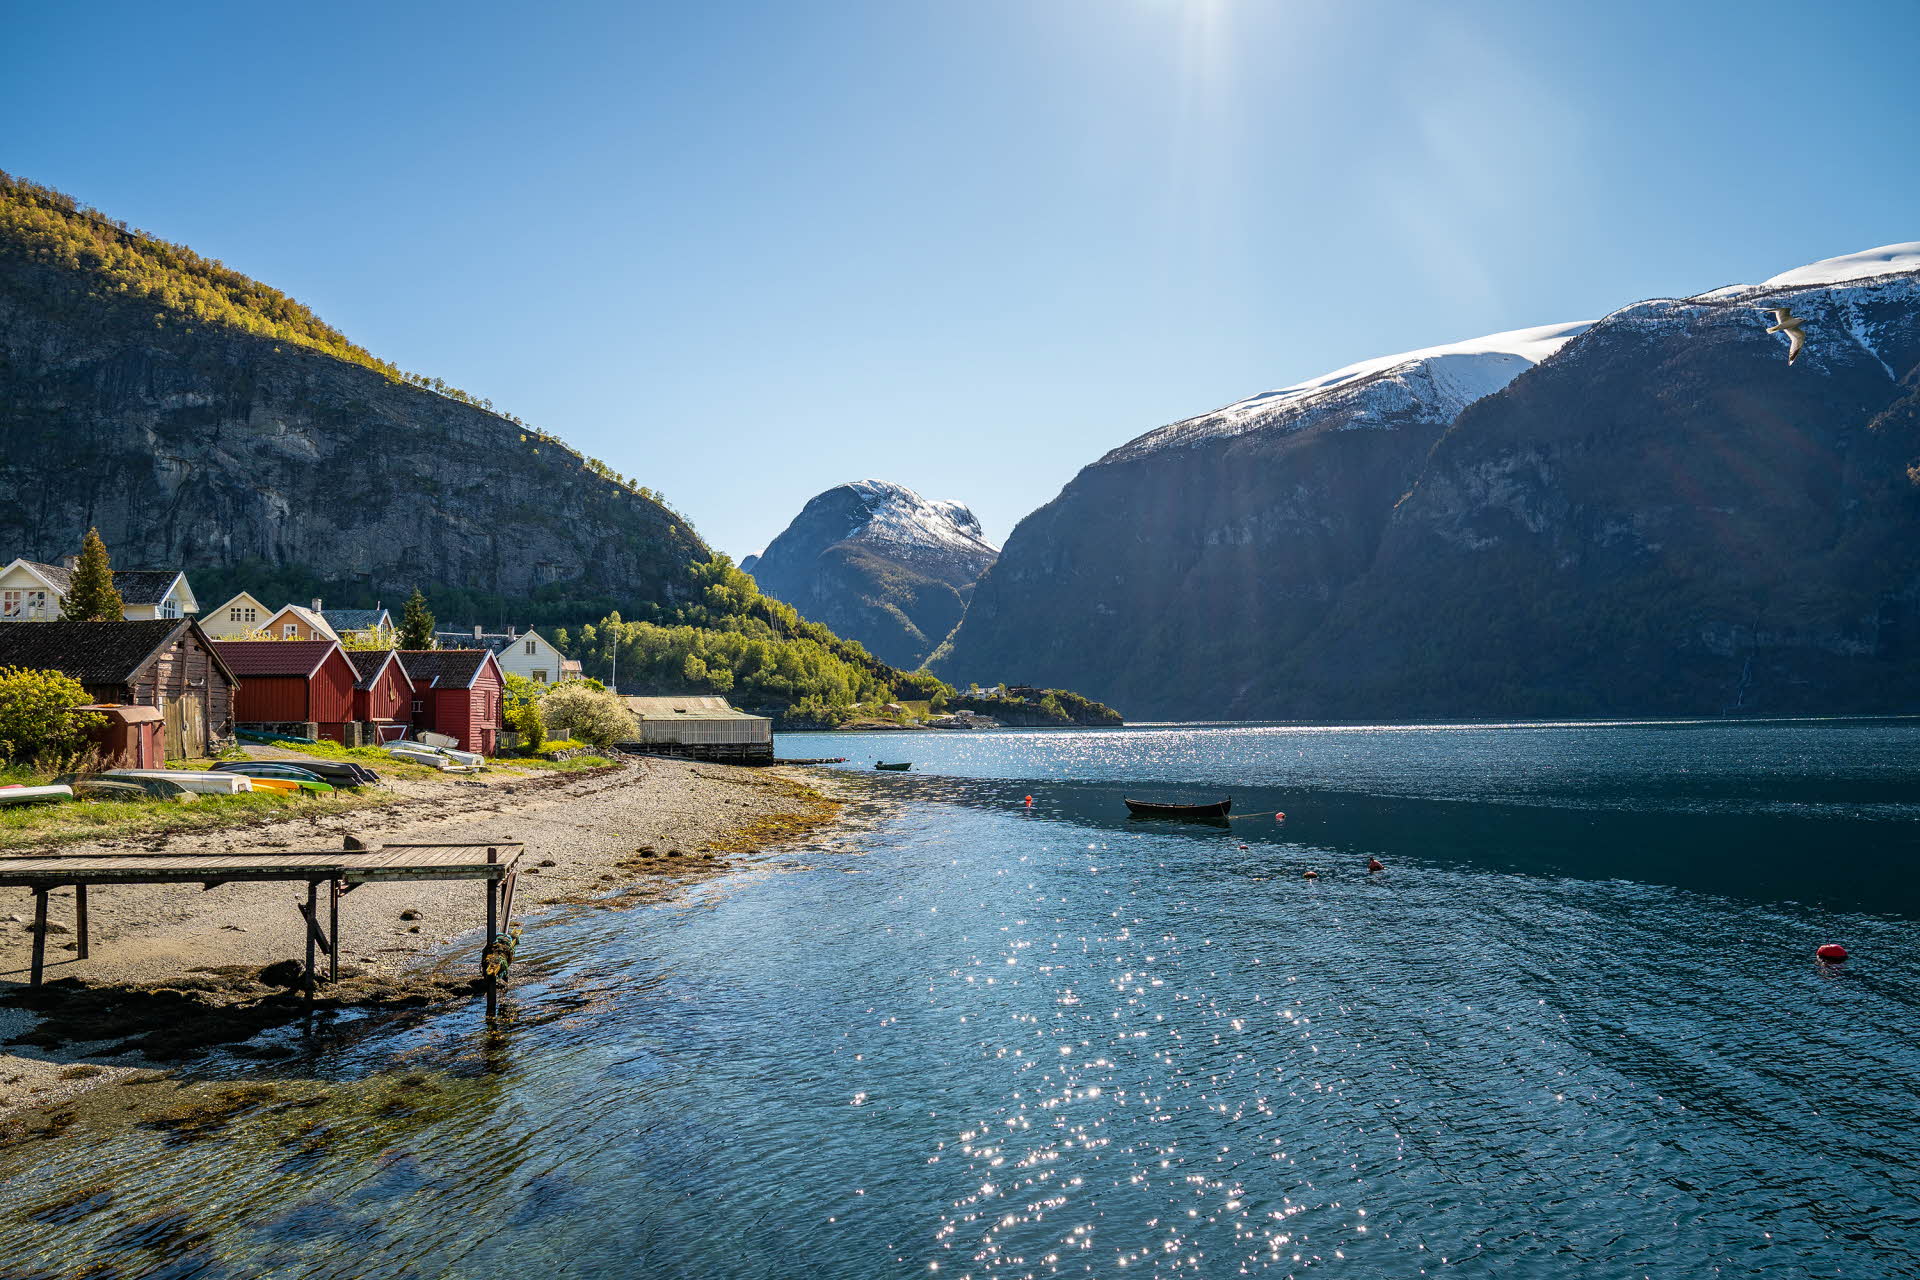 ユネスコに登録されているアウルランフィヨルド(Aurlandsfjord)の海岸線にある夏のボートハウス。雪化粧をした緑豊かな山肌